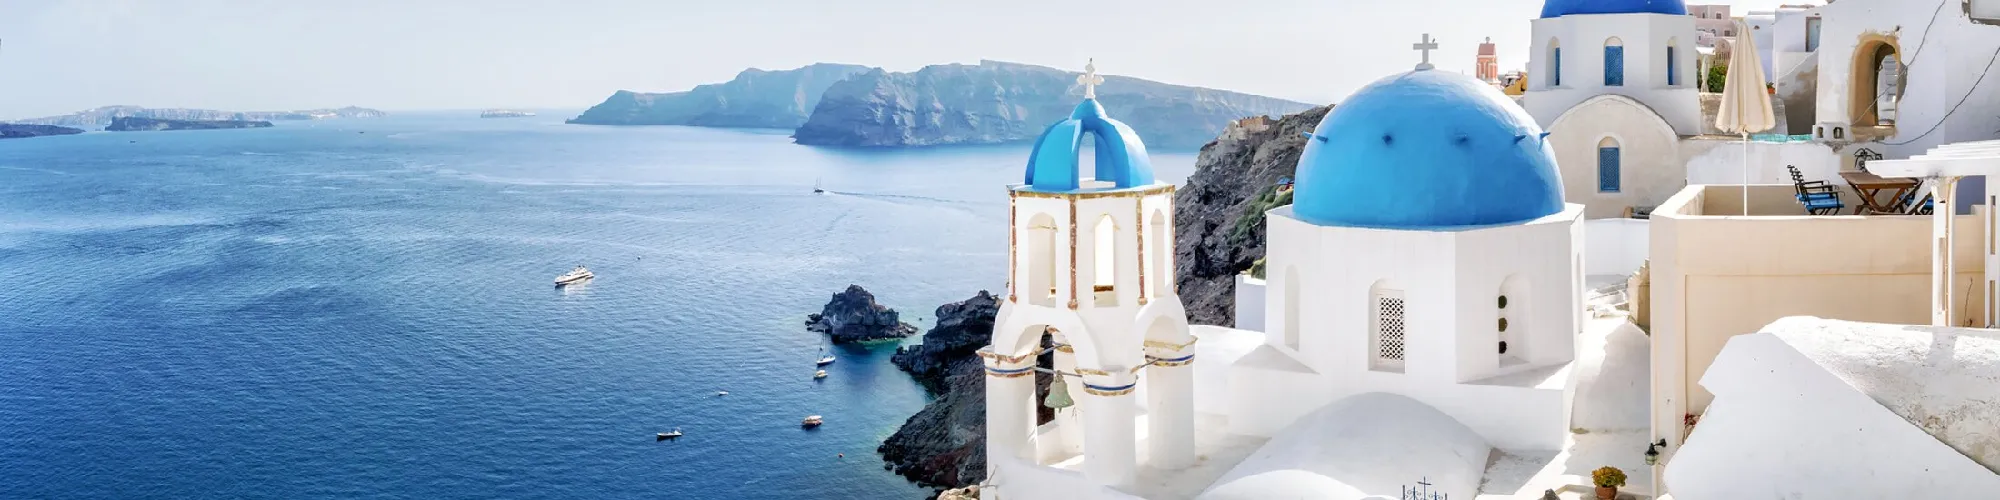 Zeit für Urlaubsgefühle in Griechenland background image